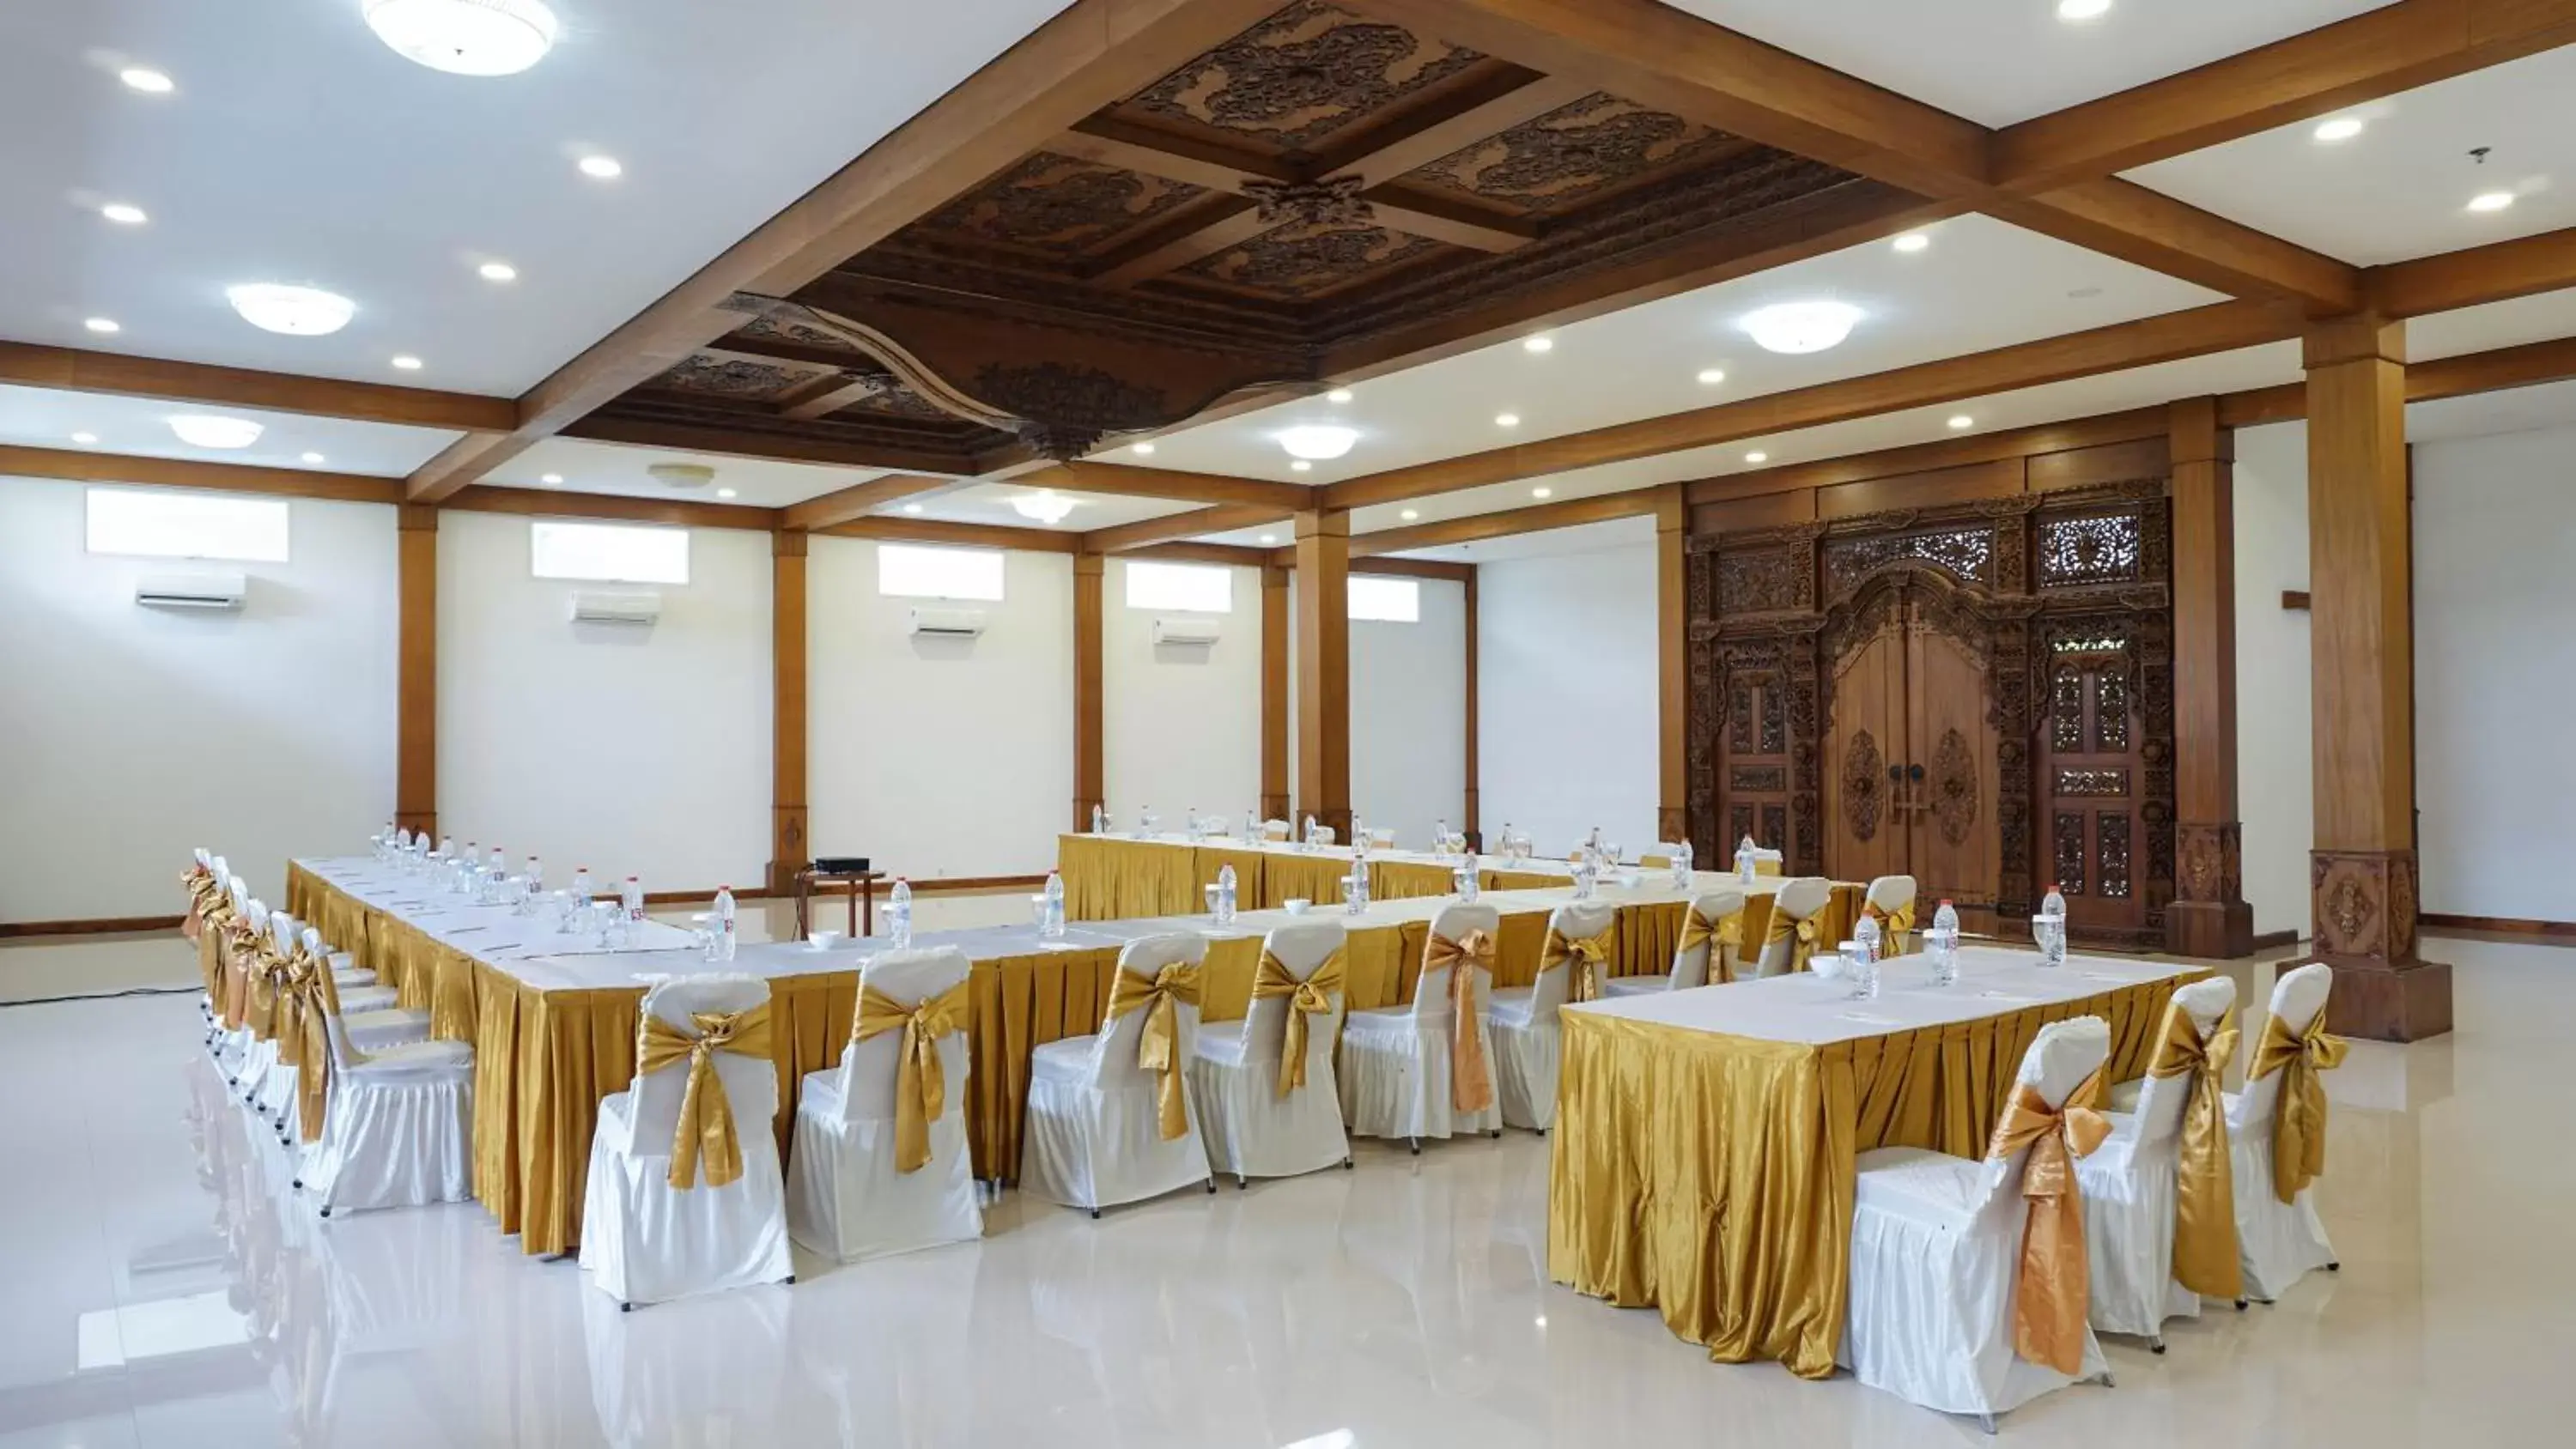 Meeting/conference room, Banquet Facilities in Amatara Royal Ganesha